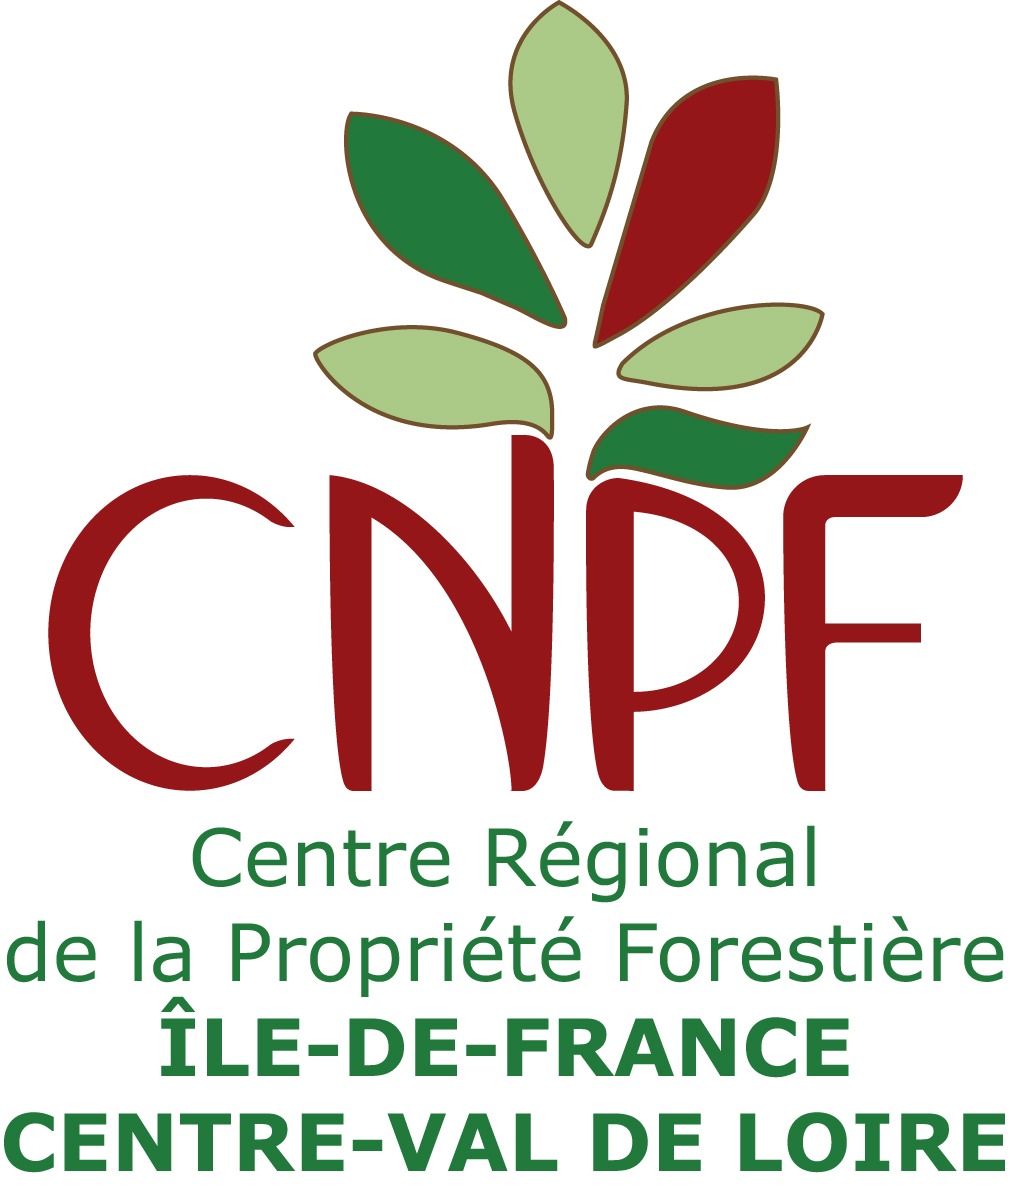 cnpf-ile-de-france-centre-val-de-loire.